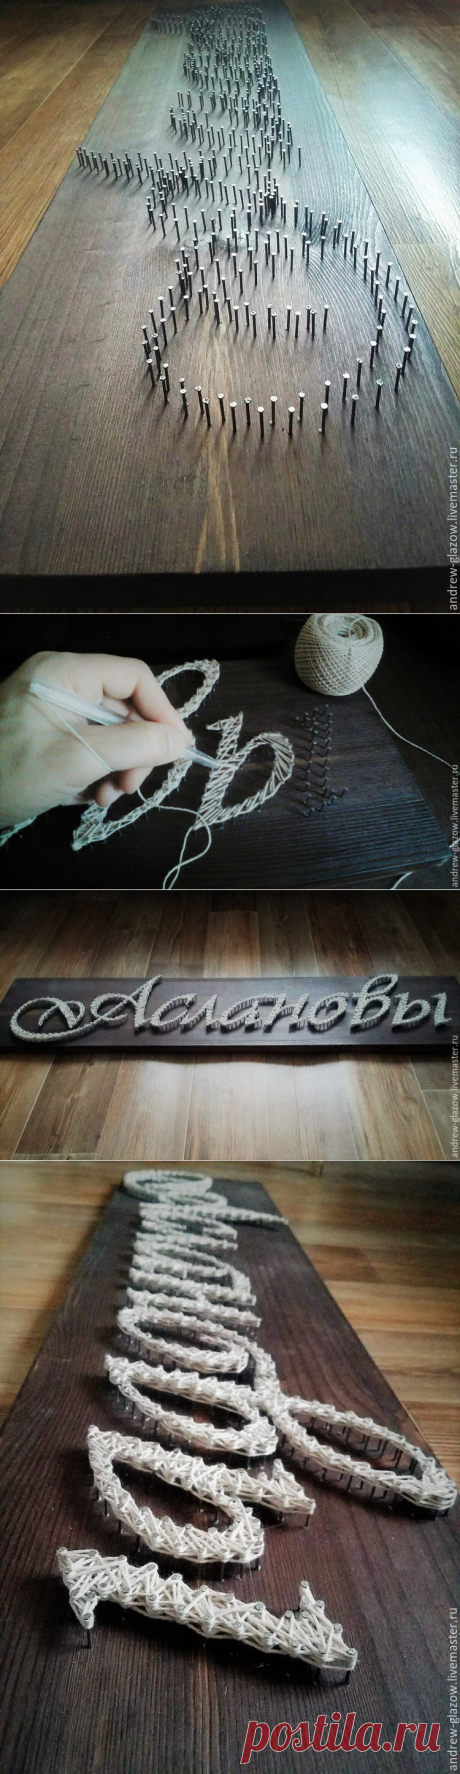 Фамильное панно в технике String Art - Ярмарка Мастеров - ручная работа, handmade